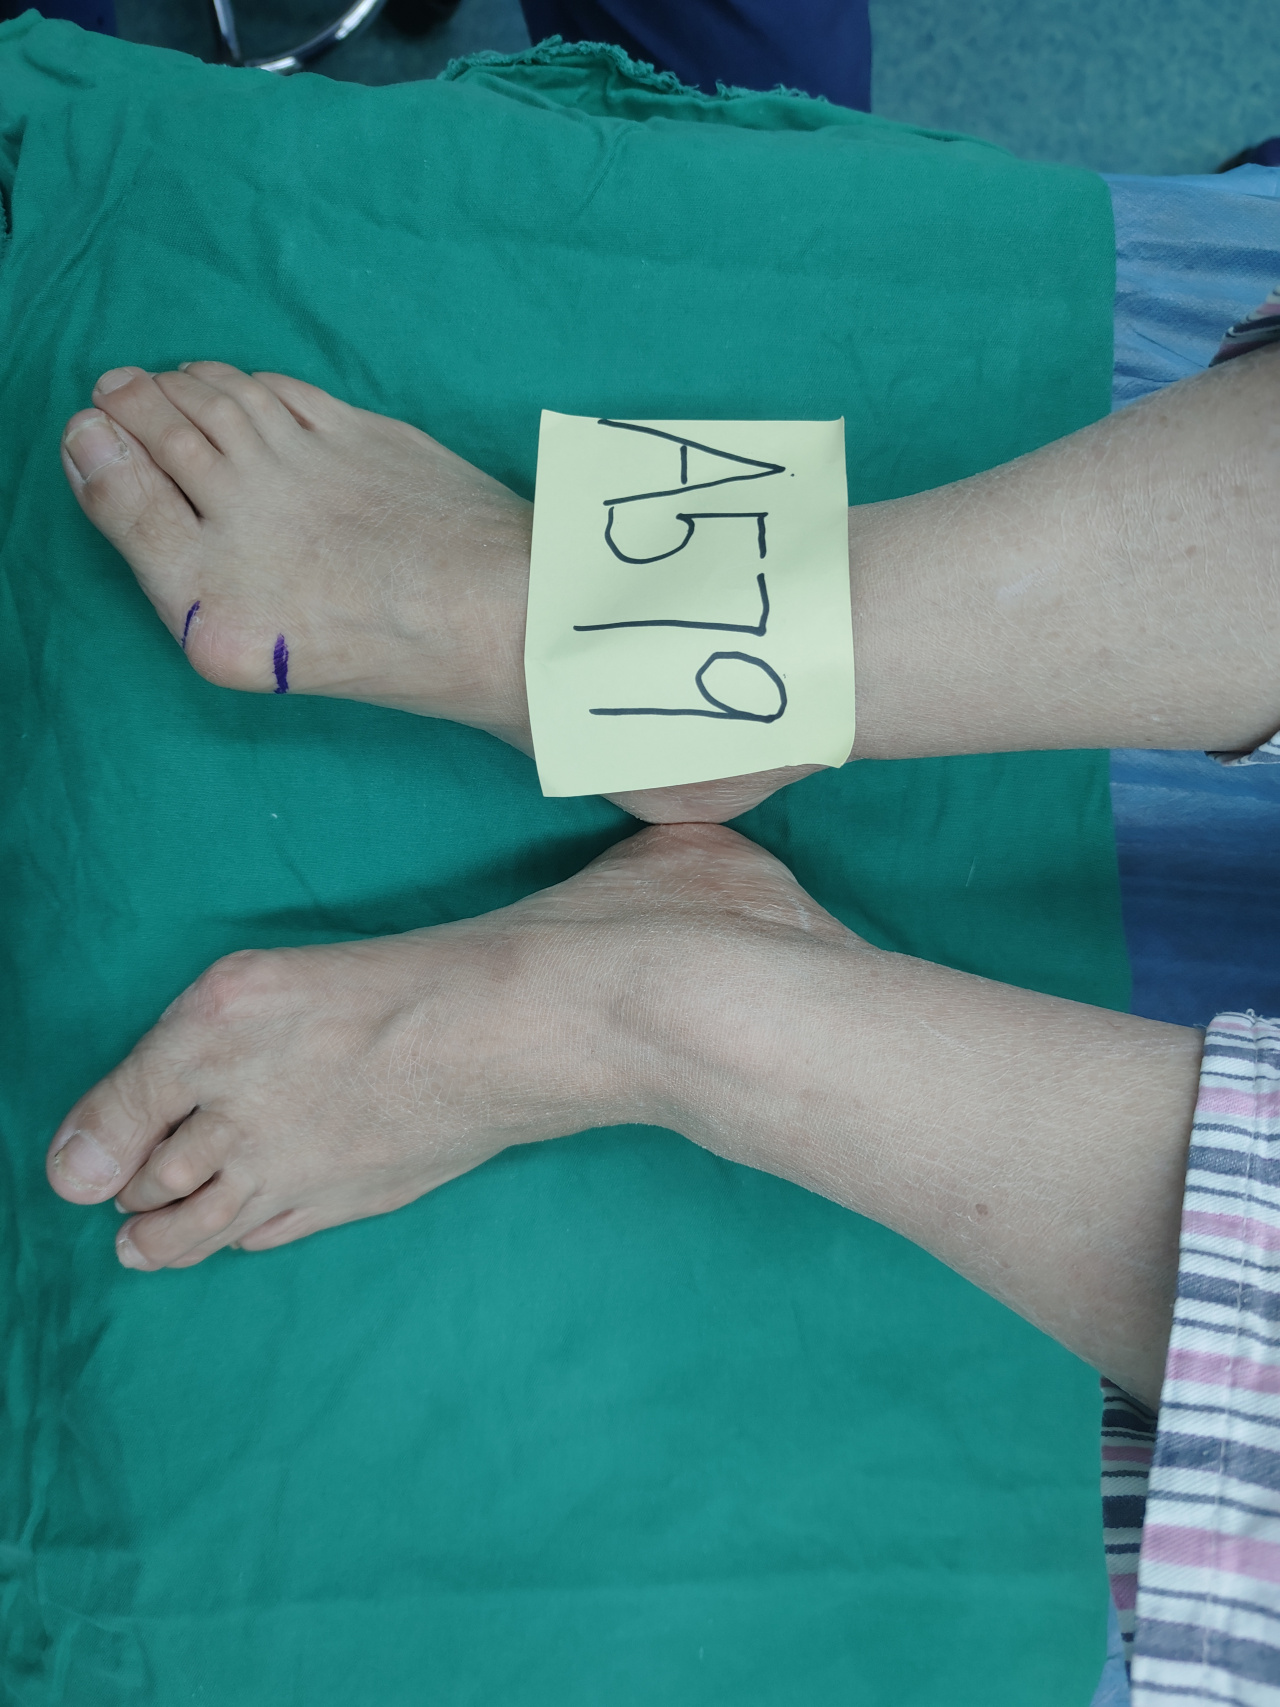 93拇外翻是一种足部畸形,通常表现为大脚趾向外倾斜,足弓降低,导致